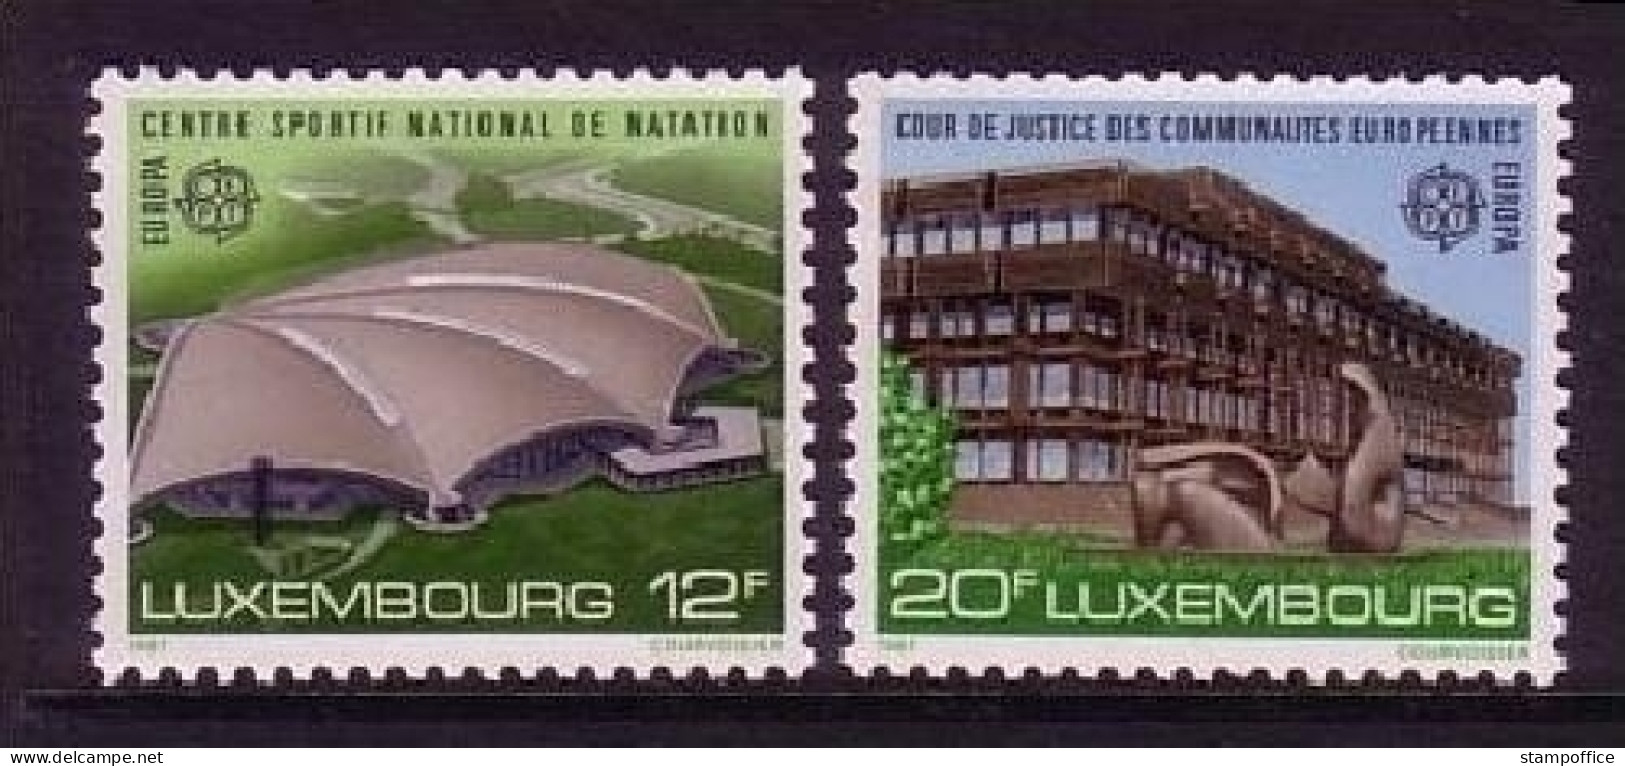 LUXEMBOURG MI-NR. 1174-1775 POSTFRISCH(MINT) EUROPA 1987 - MODERNE ARCHITEKTUR GERICHTSHOF - 1987